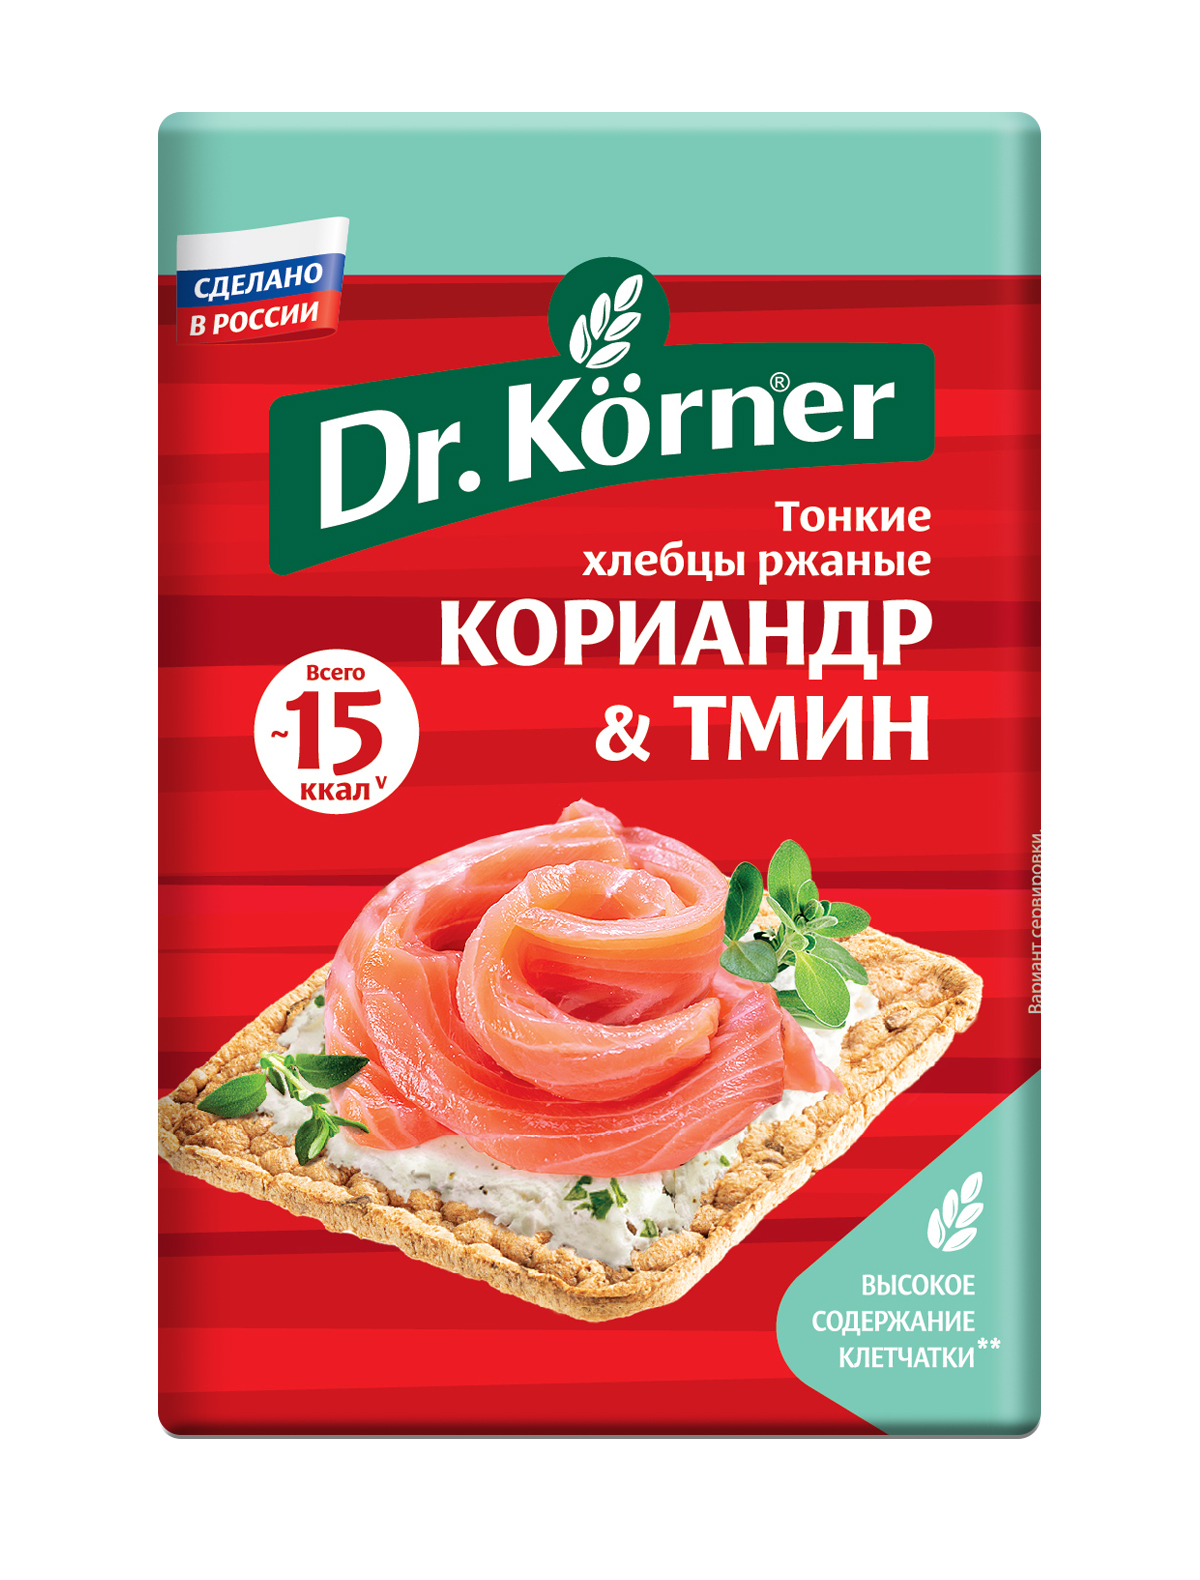 фото Dr. korner хлебцы хрустящие dr. korner «ржаные» с кориандром и тмином nobrand